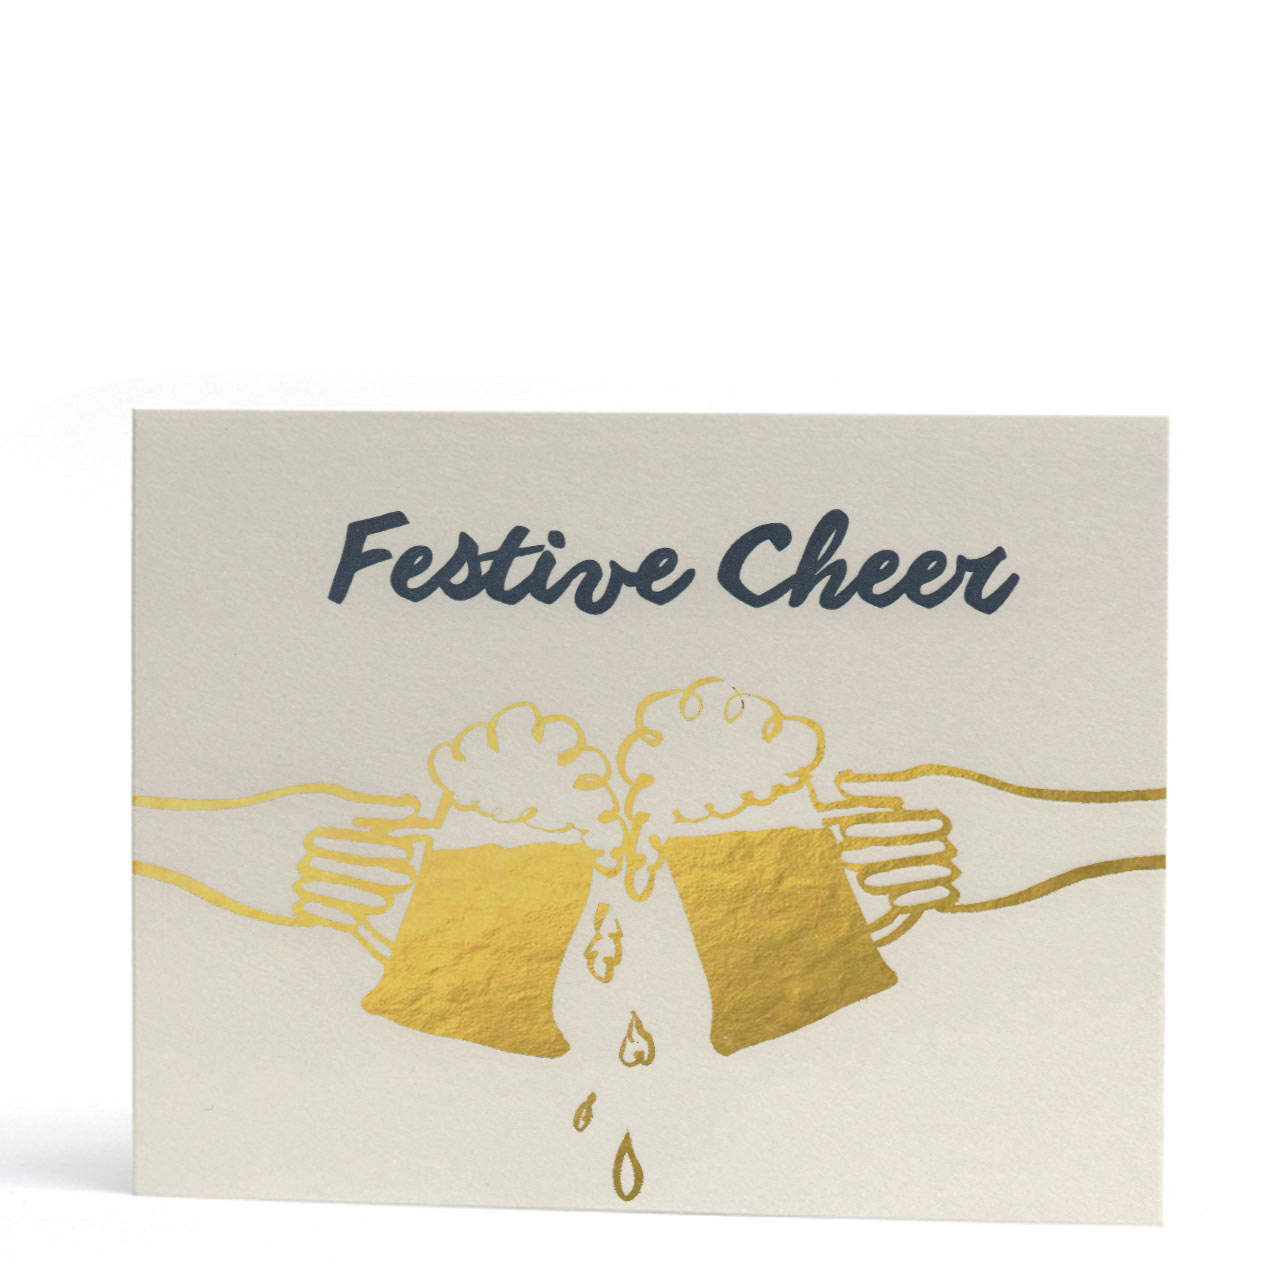 Festive Cheer Gold Foil Christmas Card